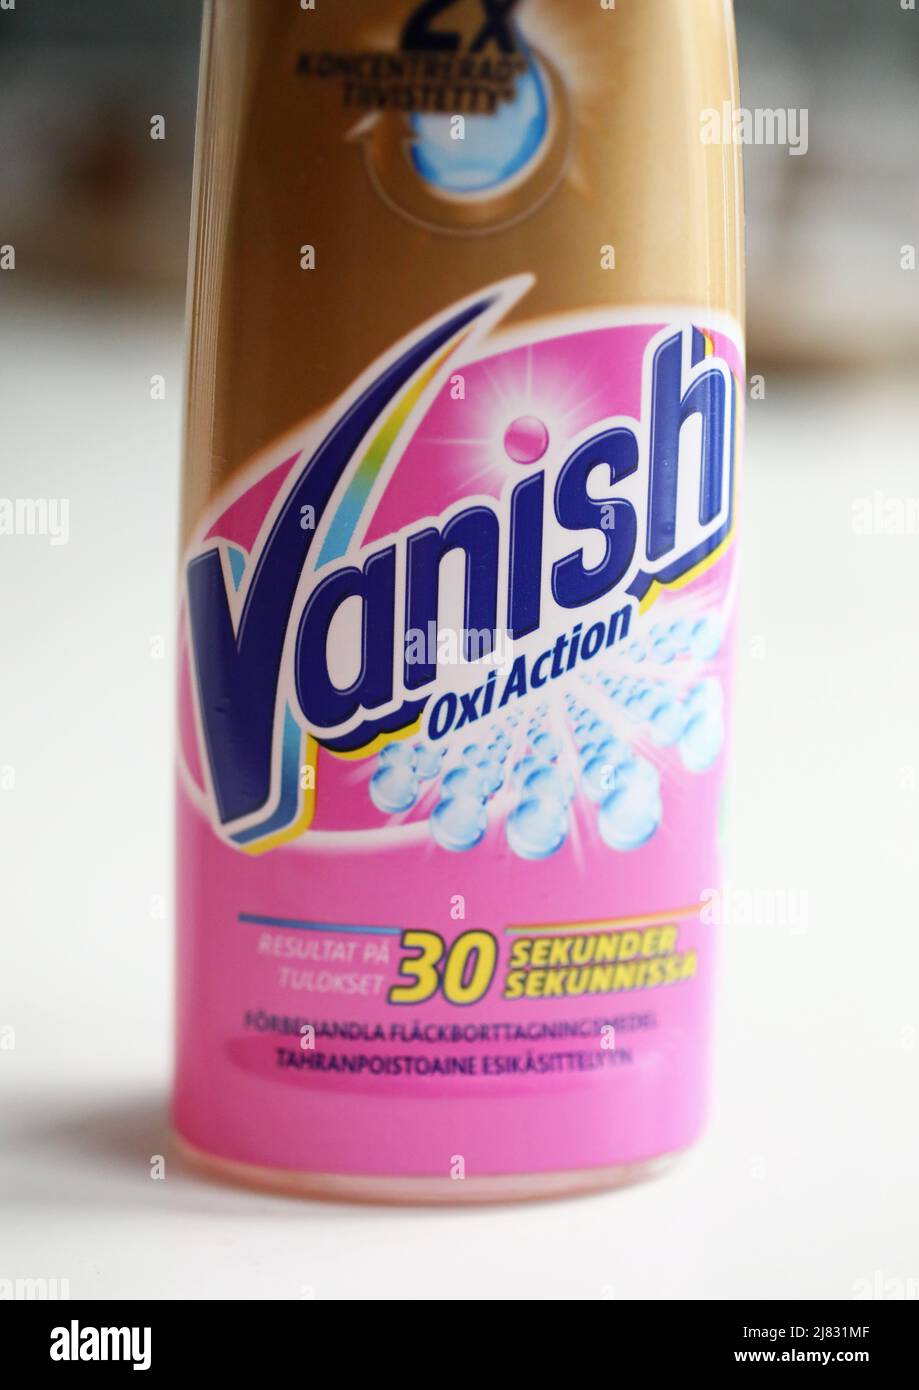 Disparu dans une maison. Vanish est une marque de produits détachants, propriété de Reckitt, et vendus en Australie, Inde, Indonésie, Russie, Afrique du Sud, Amérique latine, Angleterre et certaines parties de l'Europe. Banque D'Images